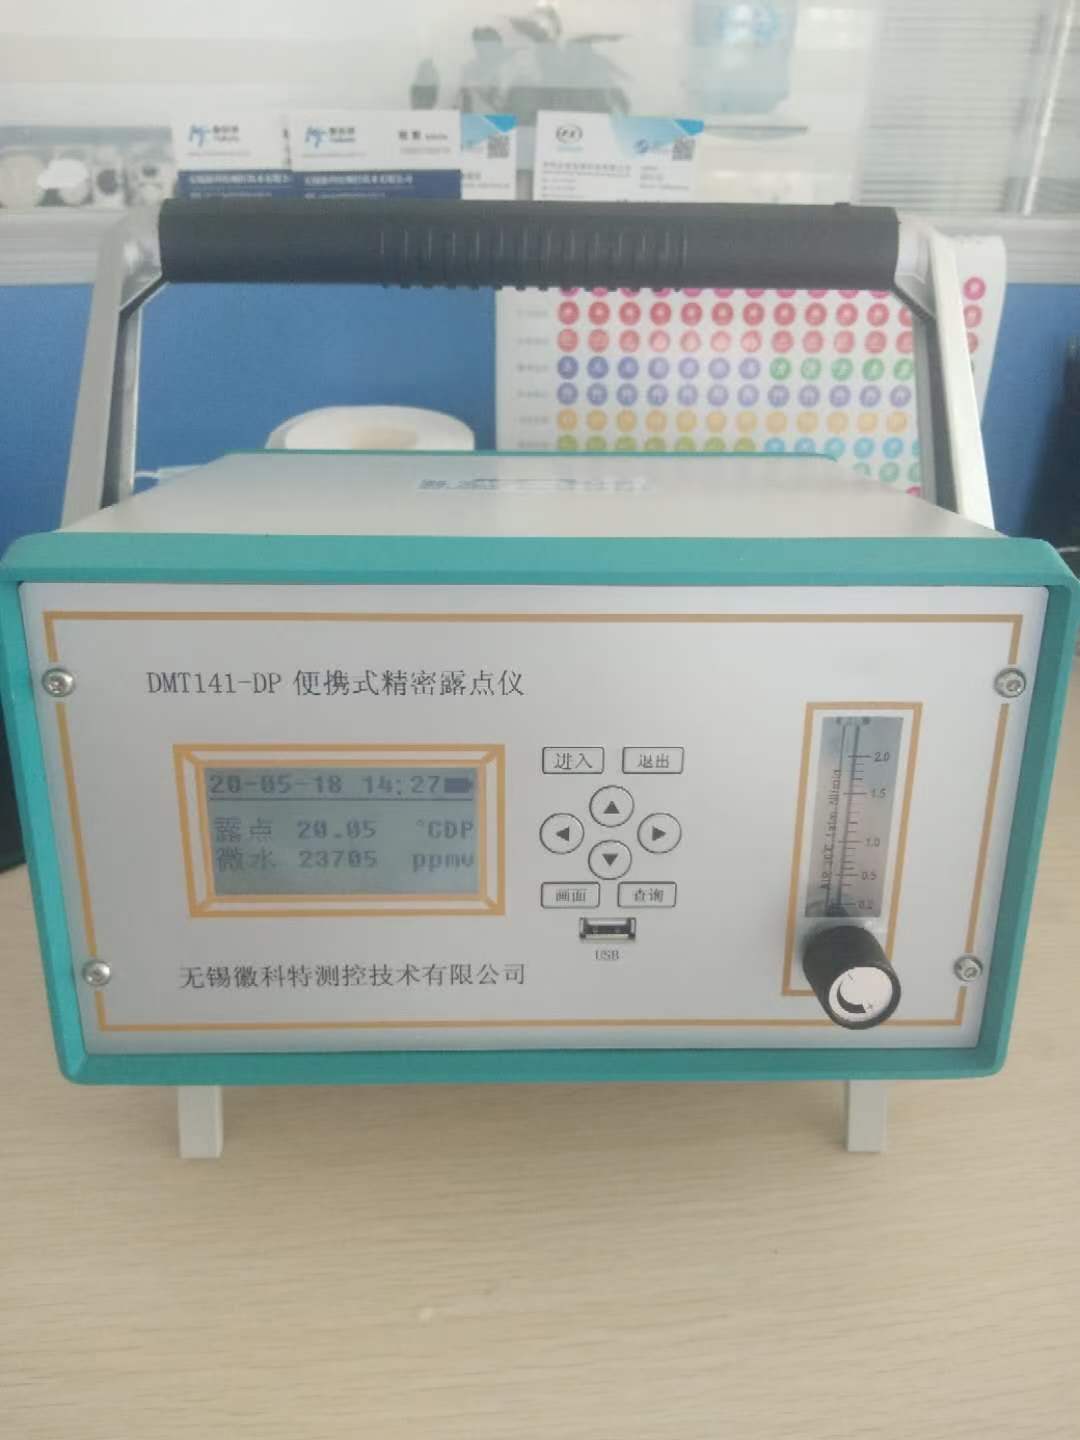 HKT817微水分析仪的产品介绍及使用